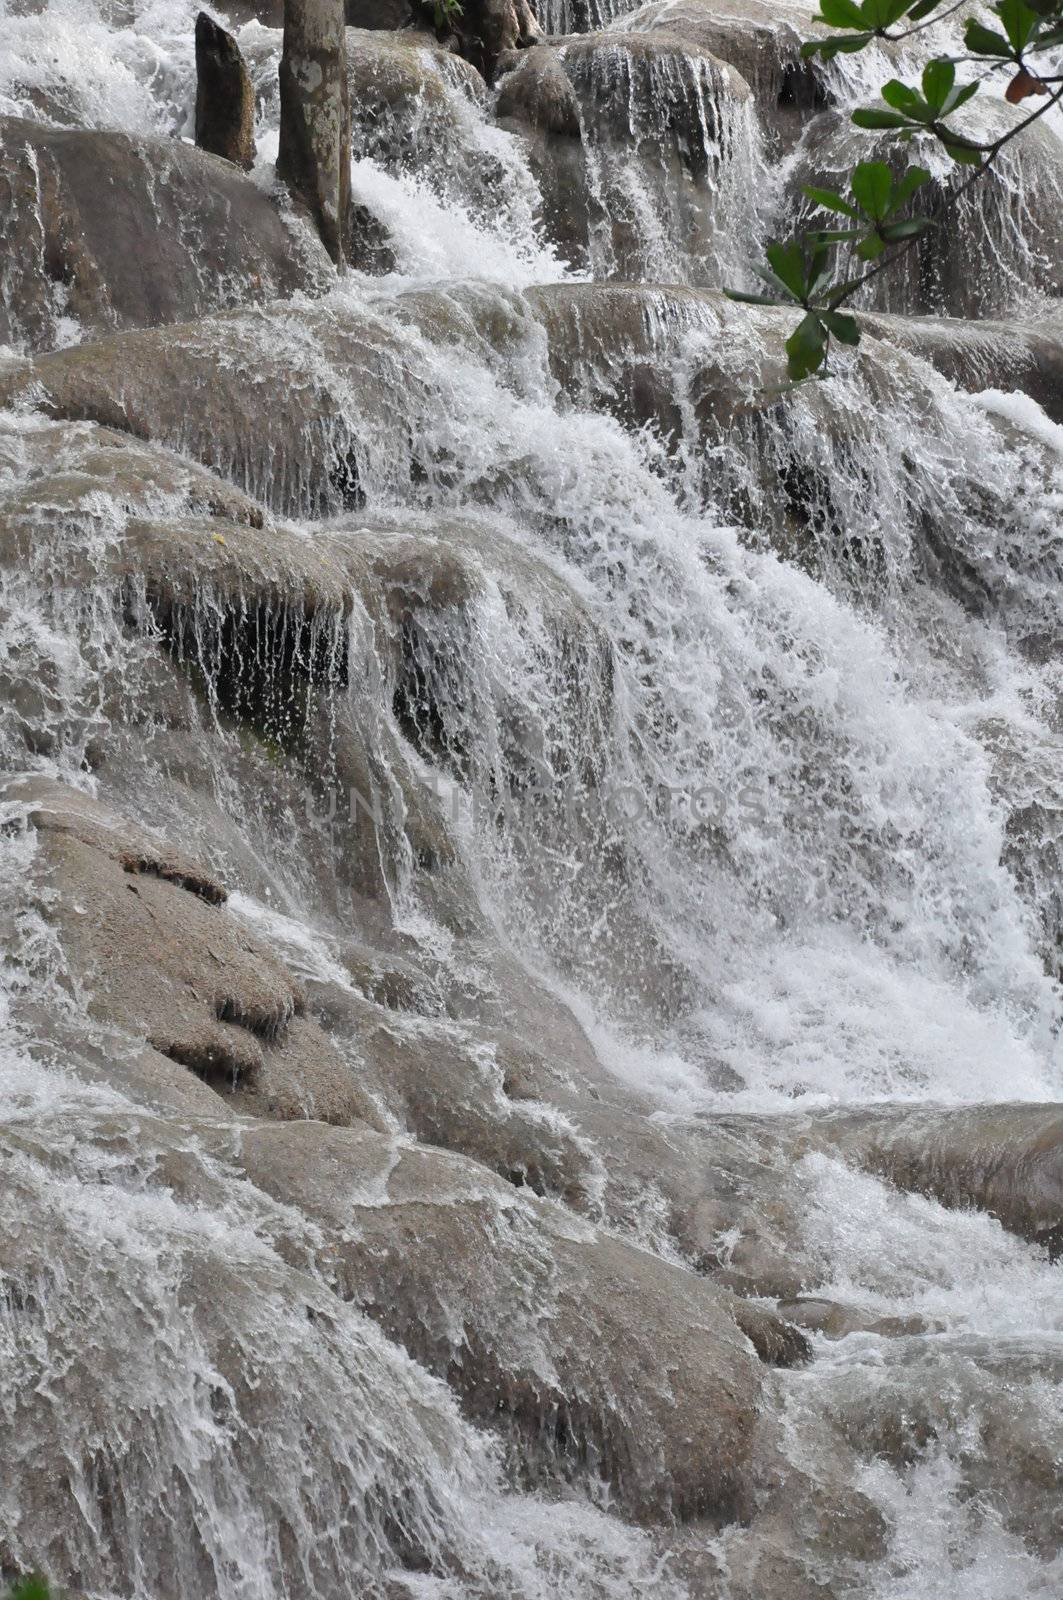 Dunn's Falls in Ocho Rios, Jamaica